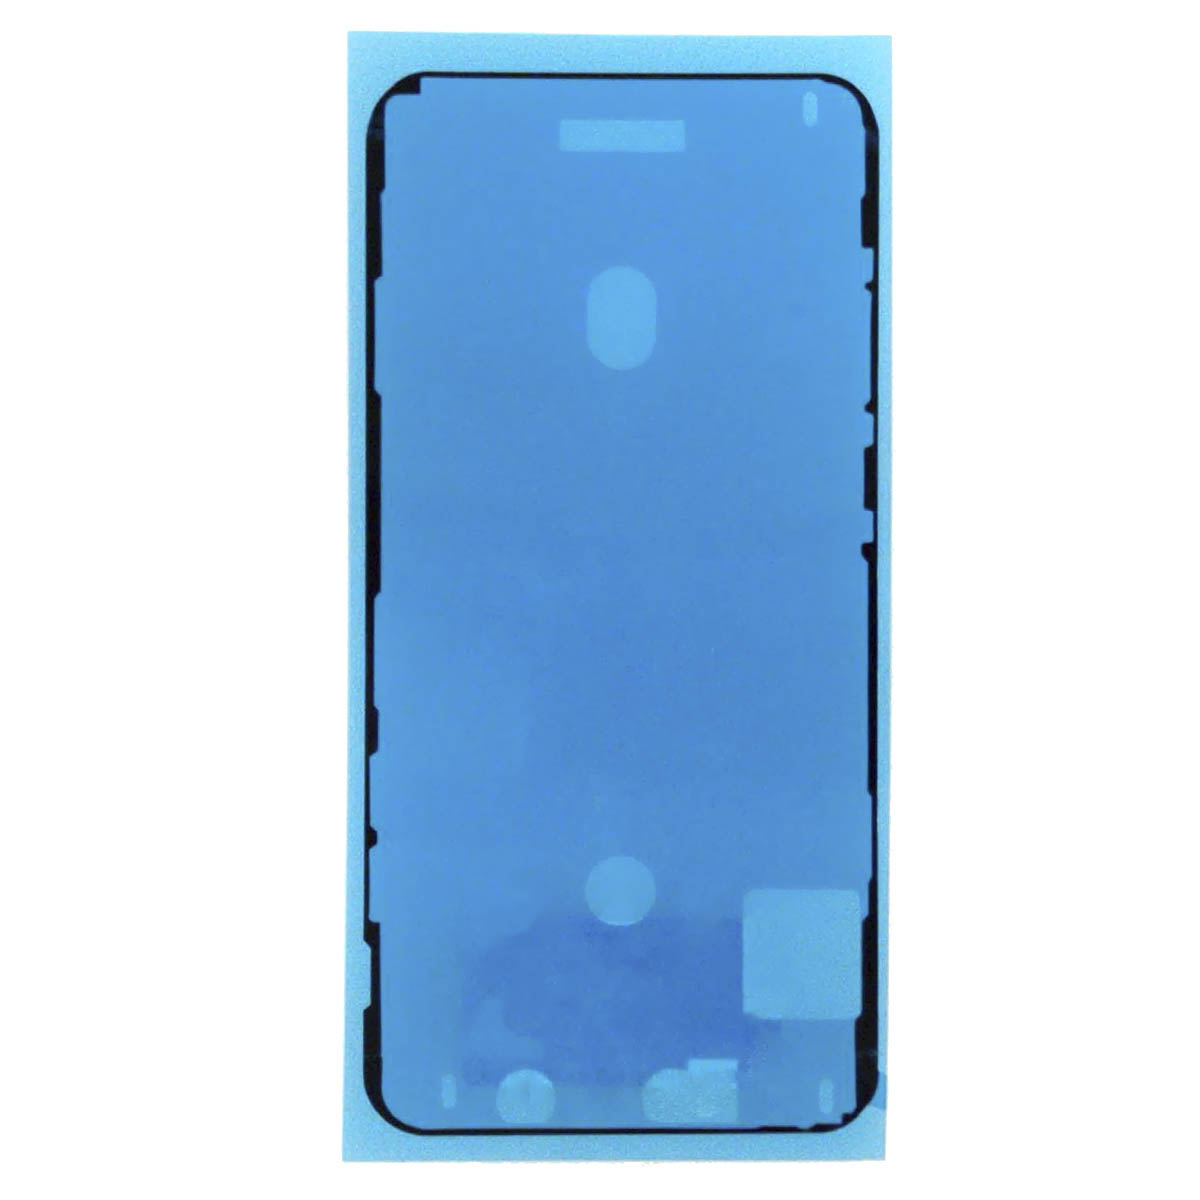 Пыле и влагозащитная прокладка, скотч сборки для APPLE iPhone 11 Pro Max, цвет черный